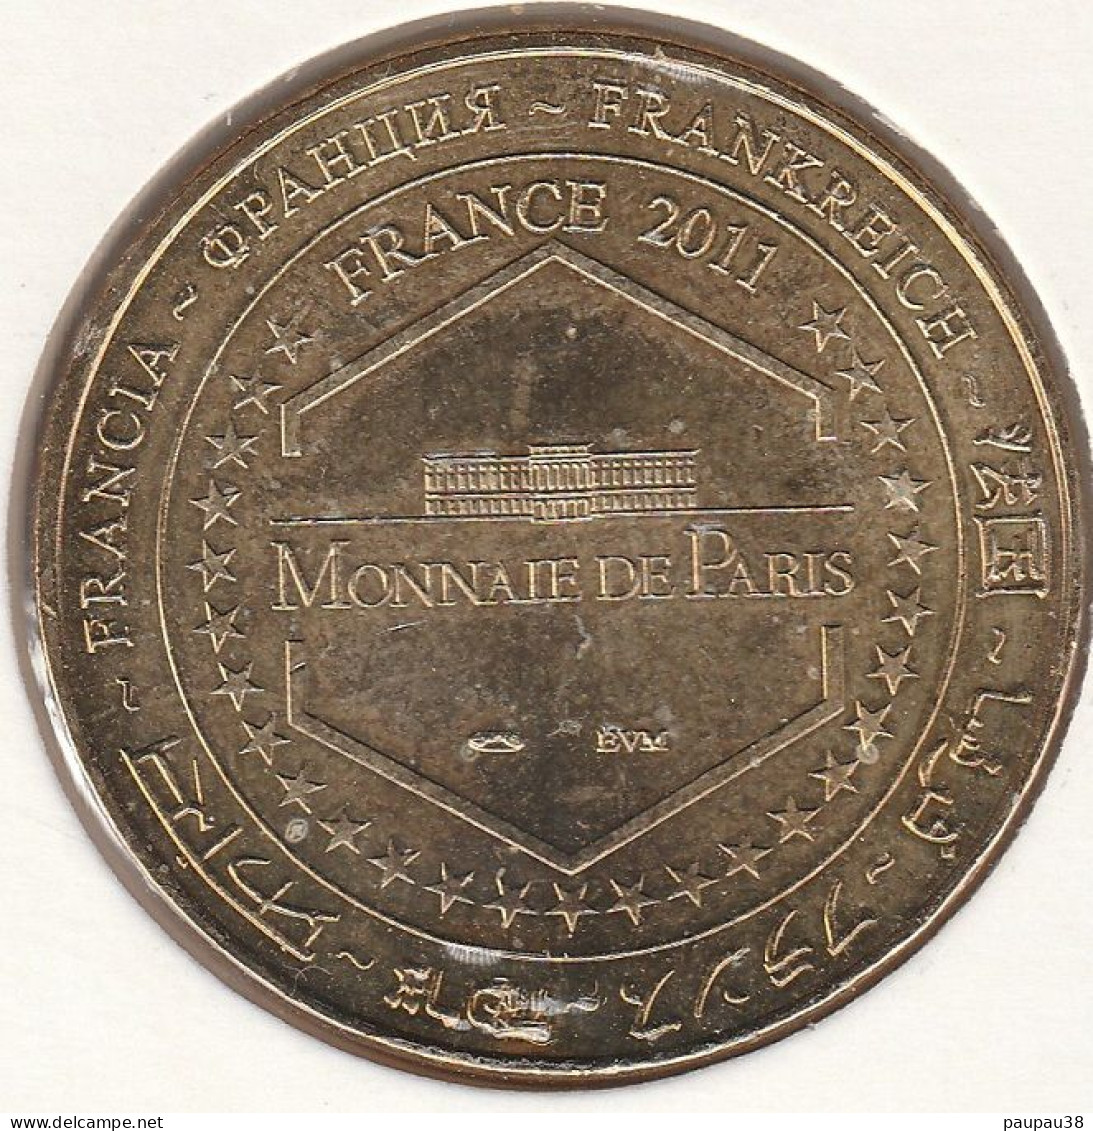 MONNAIE DE PARIS 2011 - 24 ROUFFIGNAC-SAINT-CERNIN-DE-REILHAC - Grotte De Rouffignac - Le Patriarche - 2011